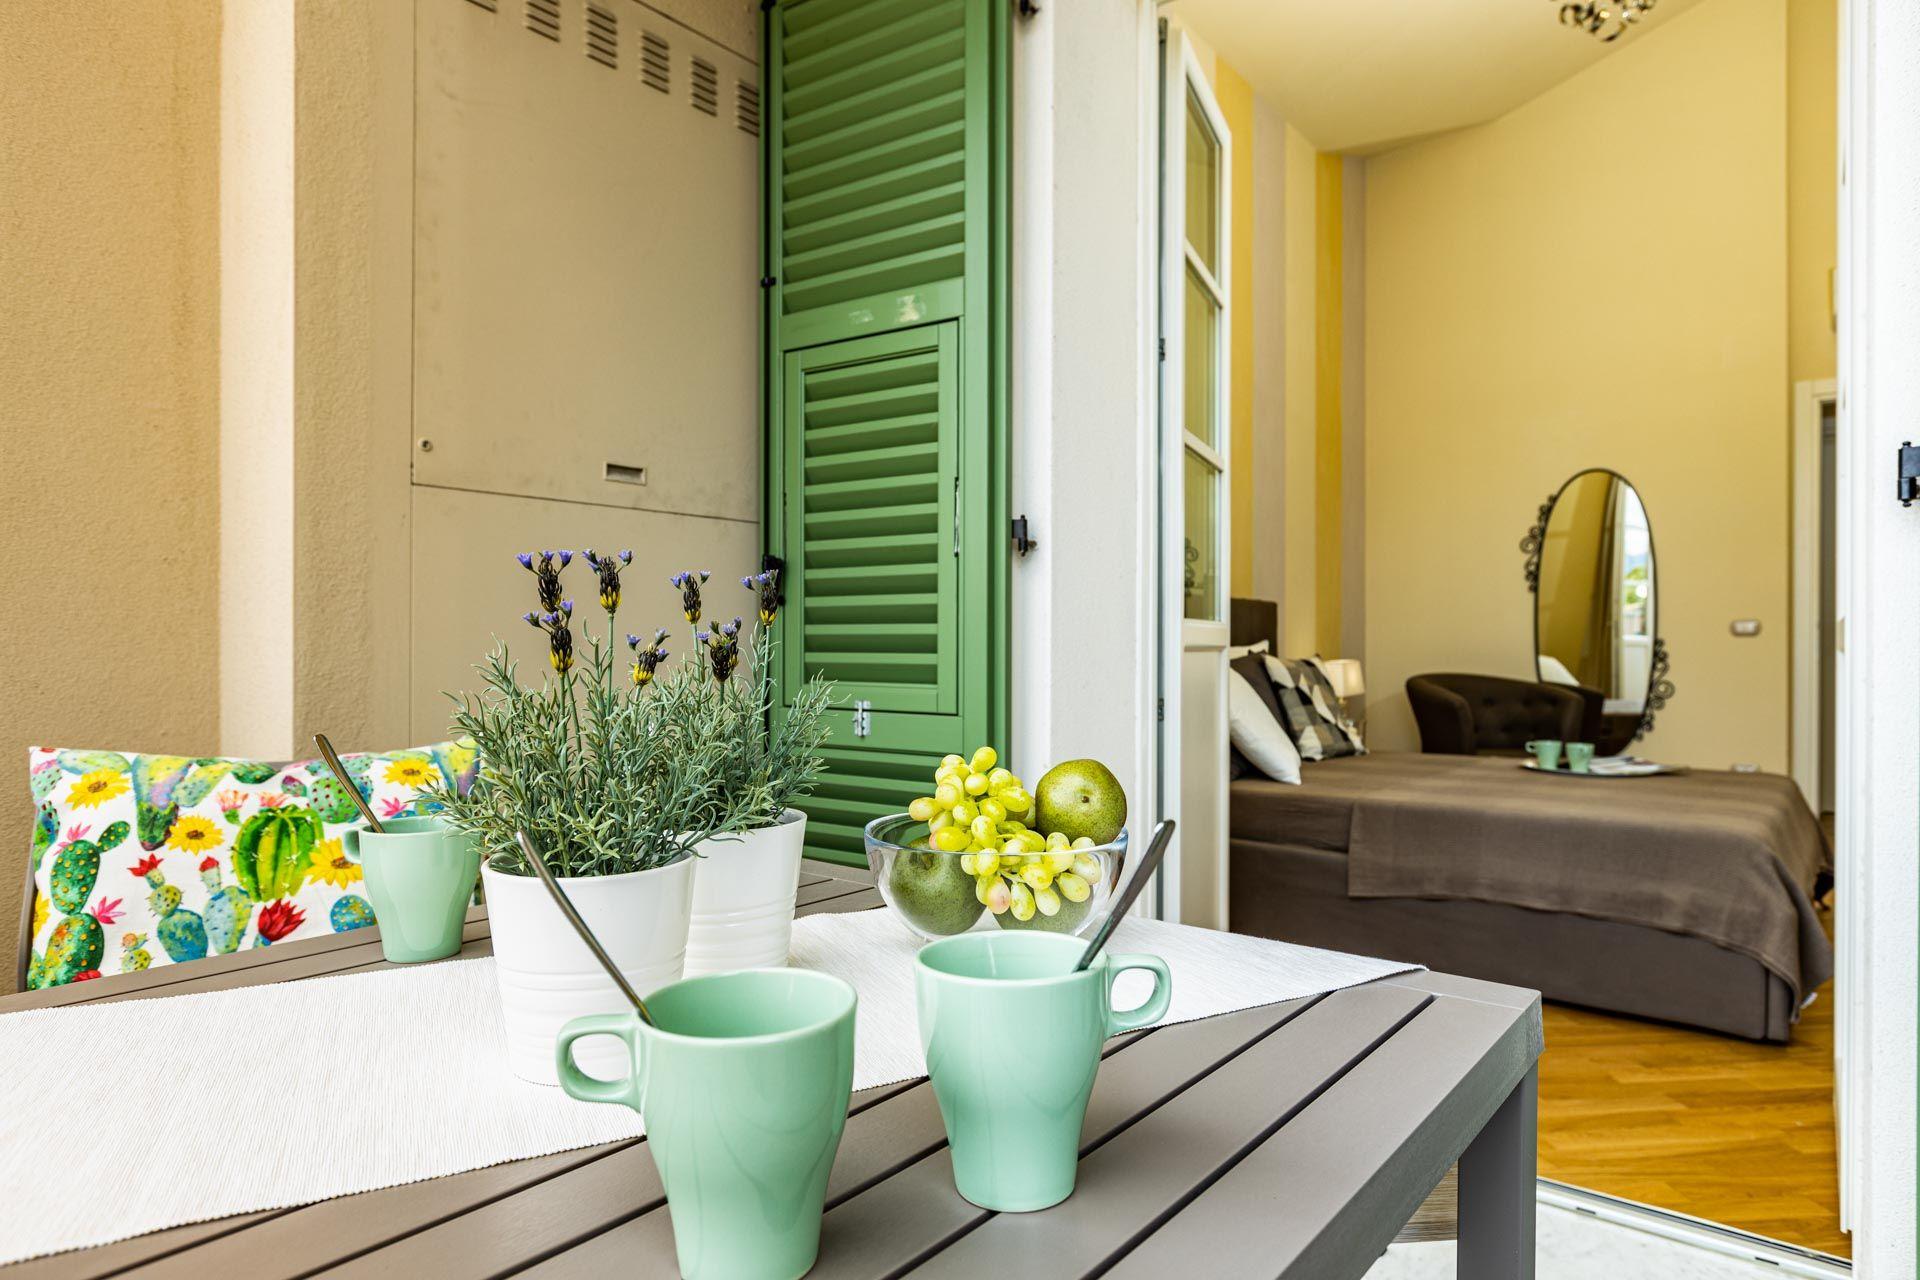 Ferienwohnung für 2 Personen ca. 50 m² i Ferienwohnung in Italien